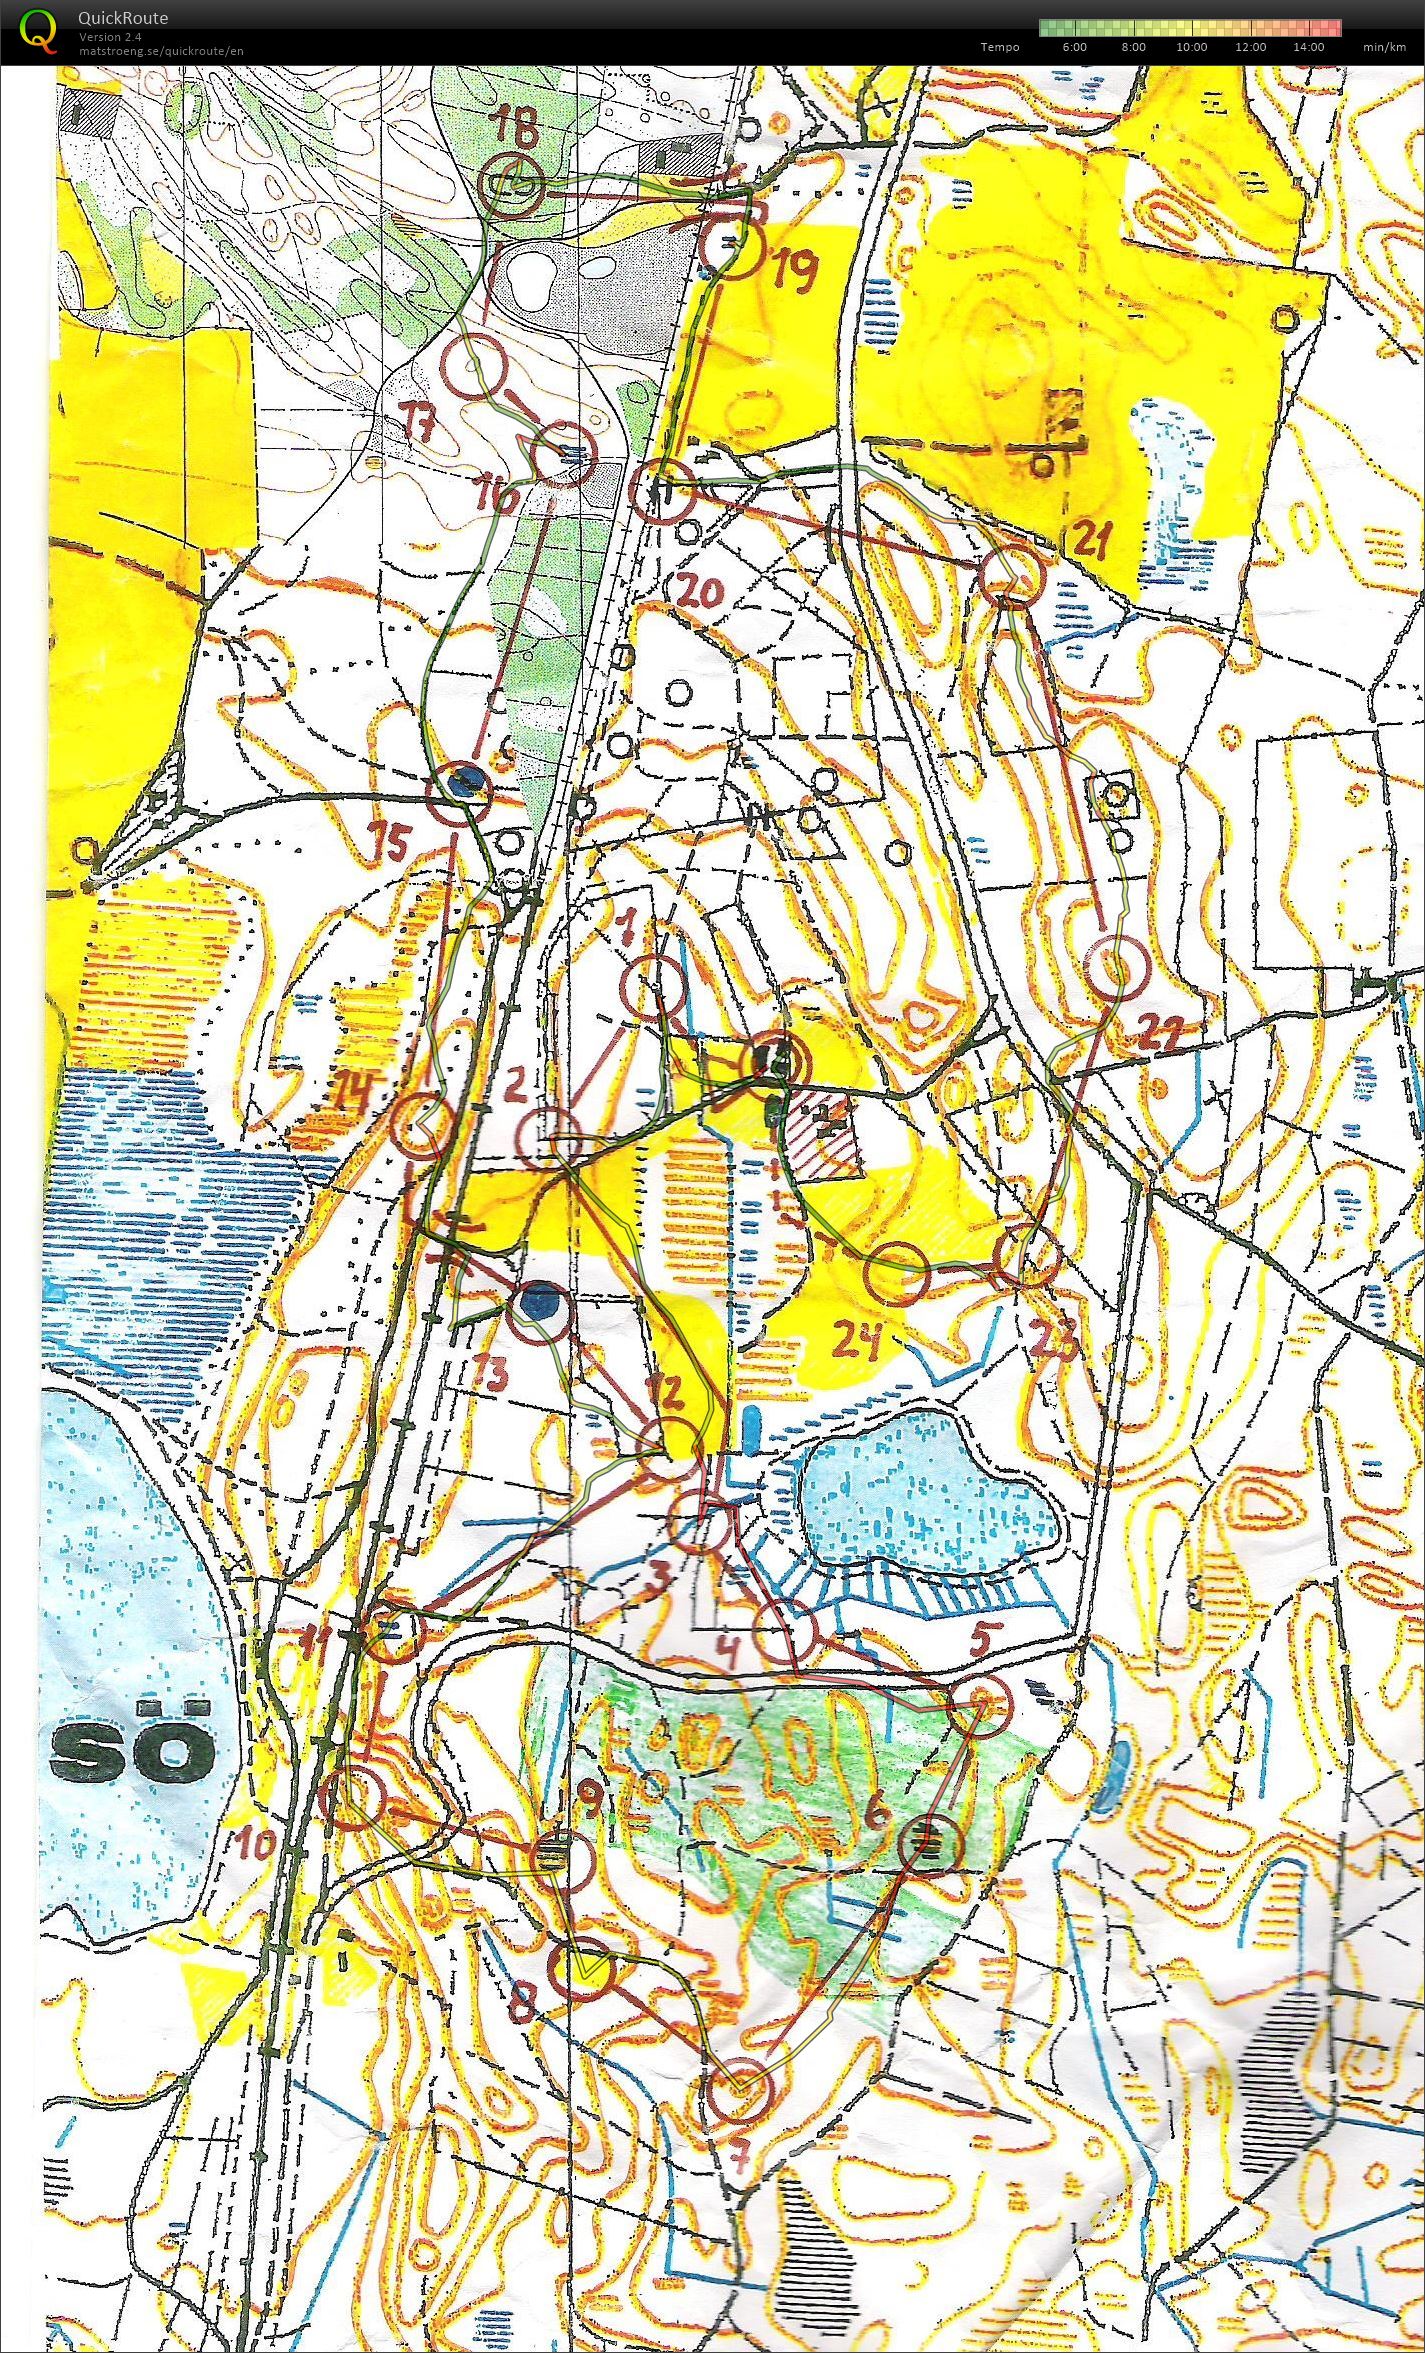 Rold Brændeskov - bane 1 - 6,9 km. (01.01.2014)